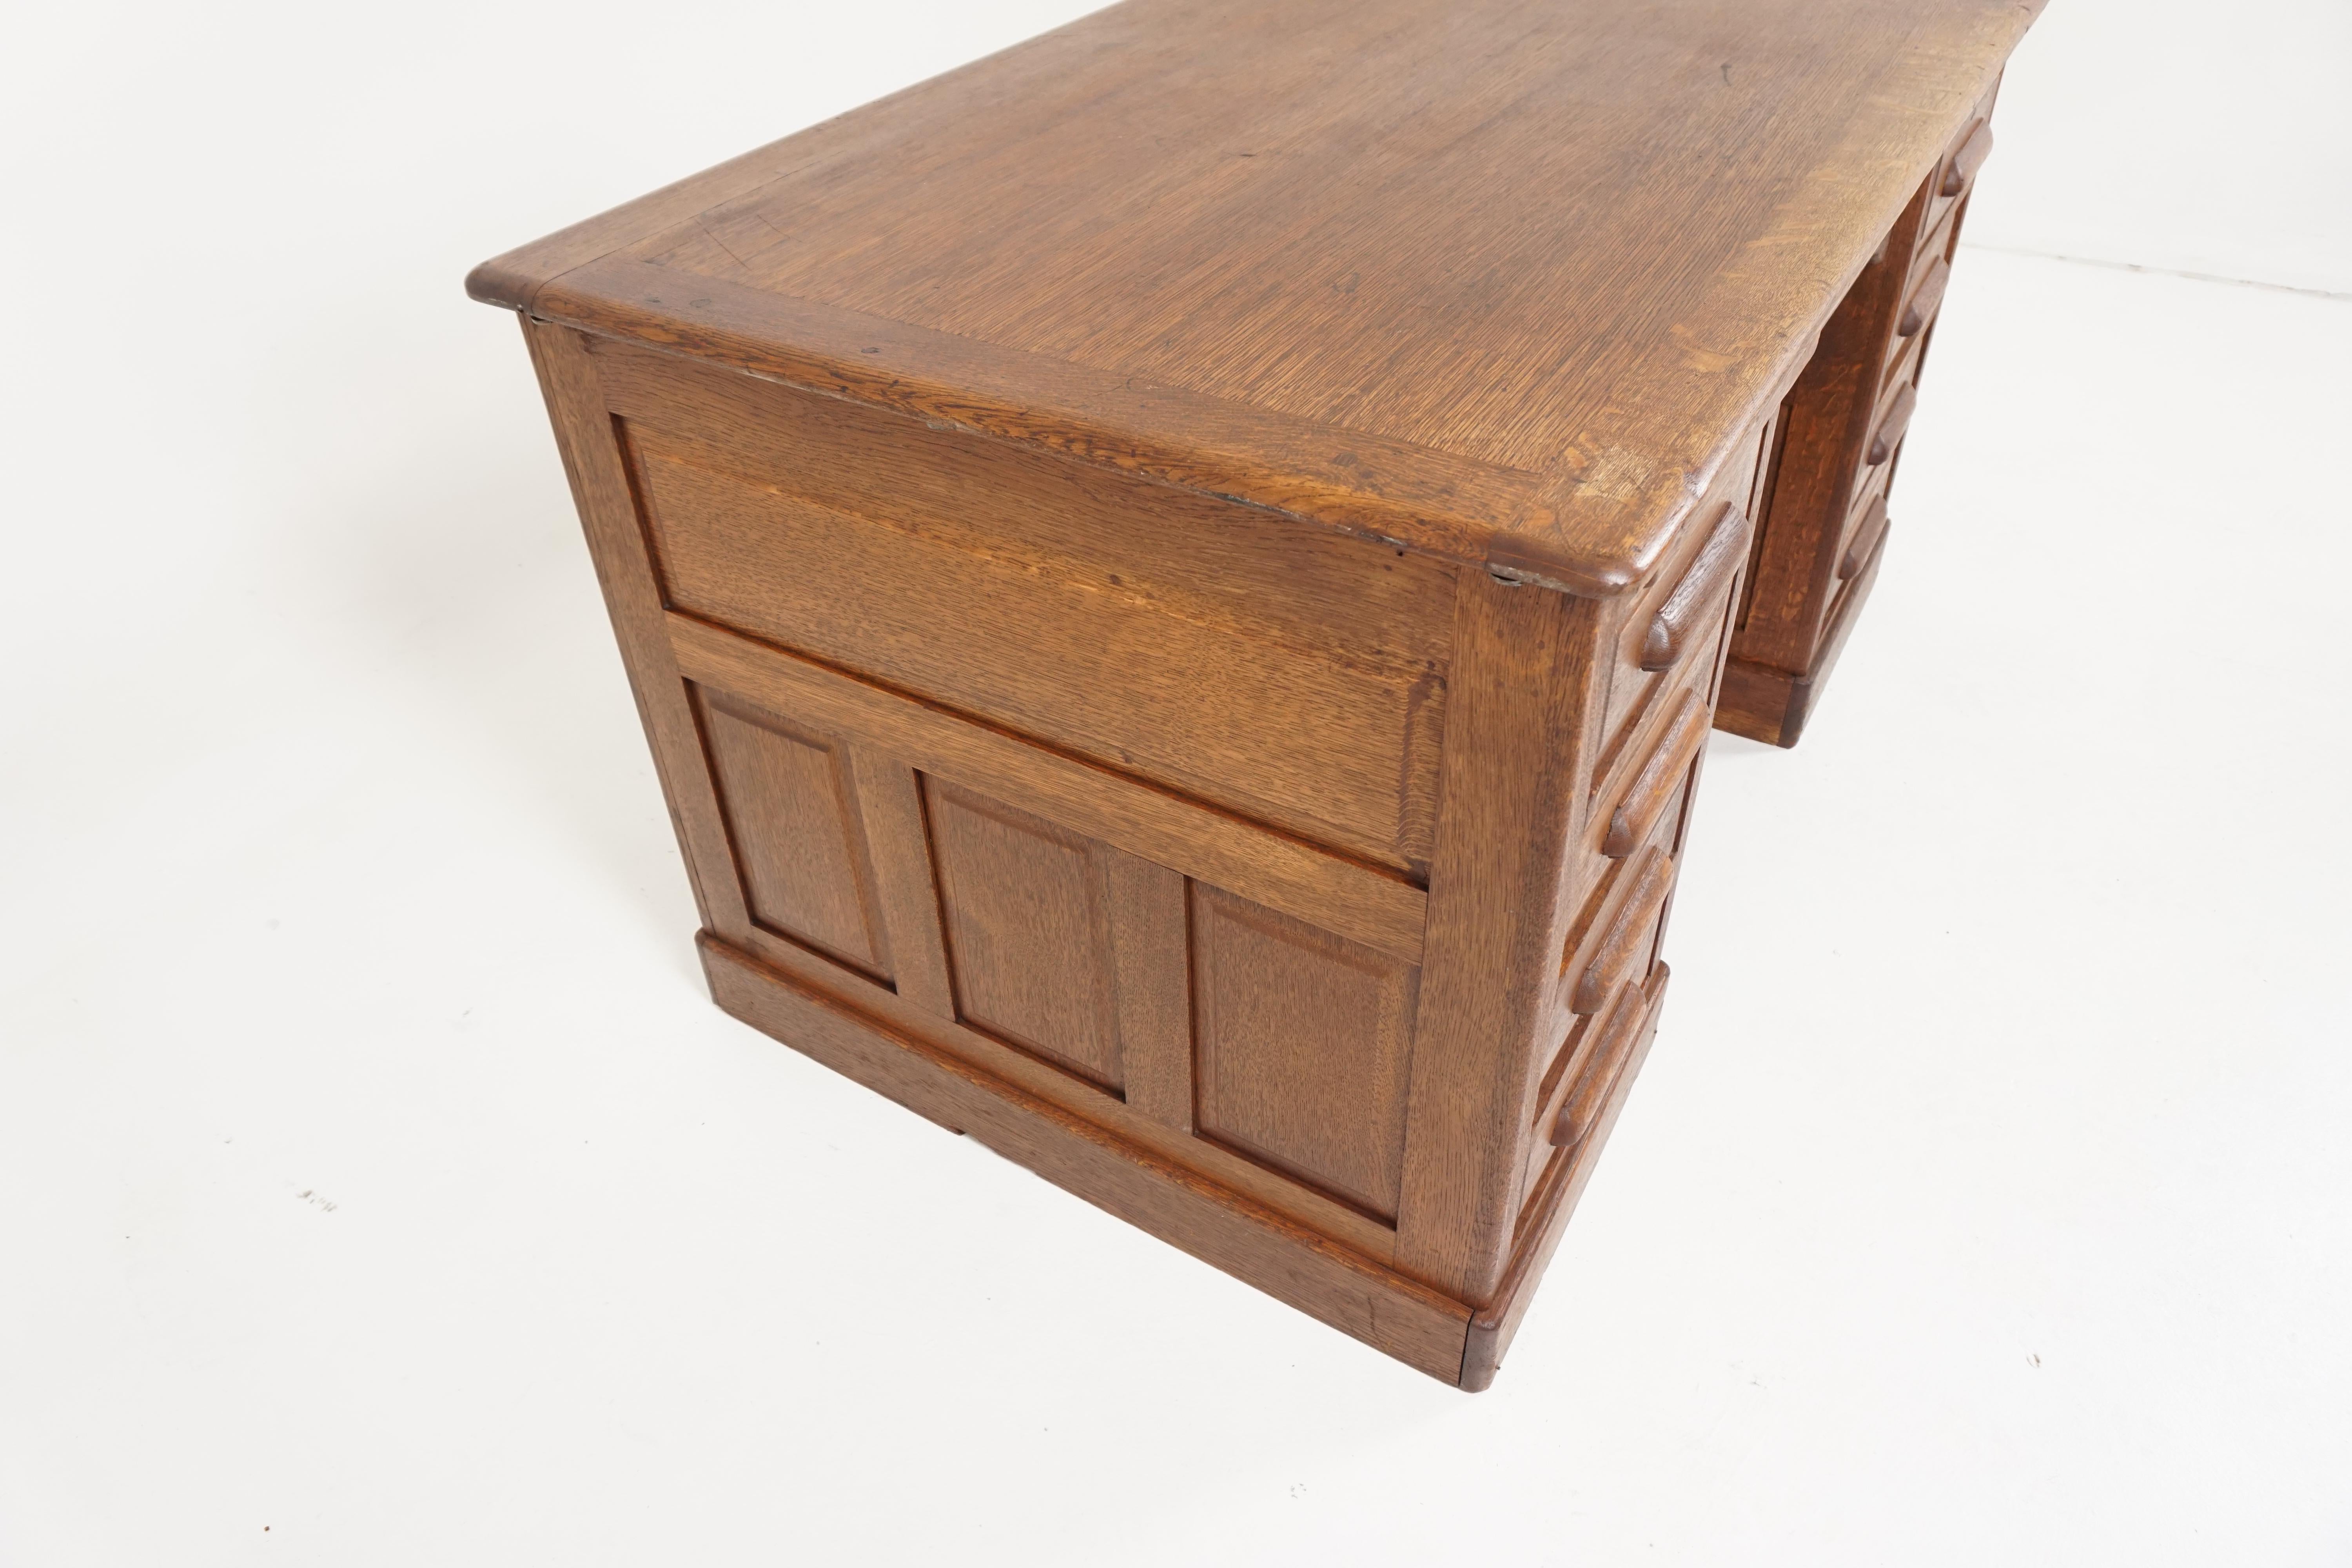 Hand-Crafted Antique Pedestal Desk, Tiger Oak Raised Panel Flat Top Desk, America 1920, B2021